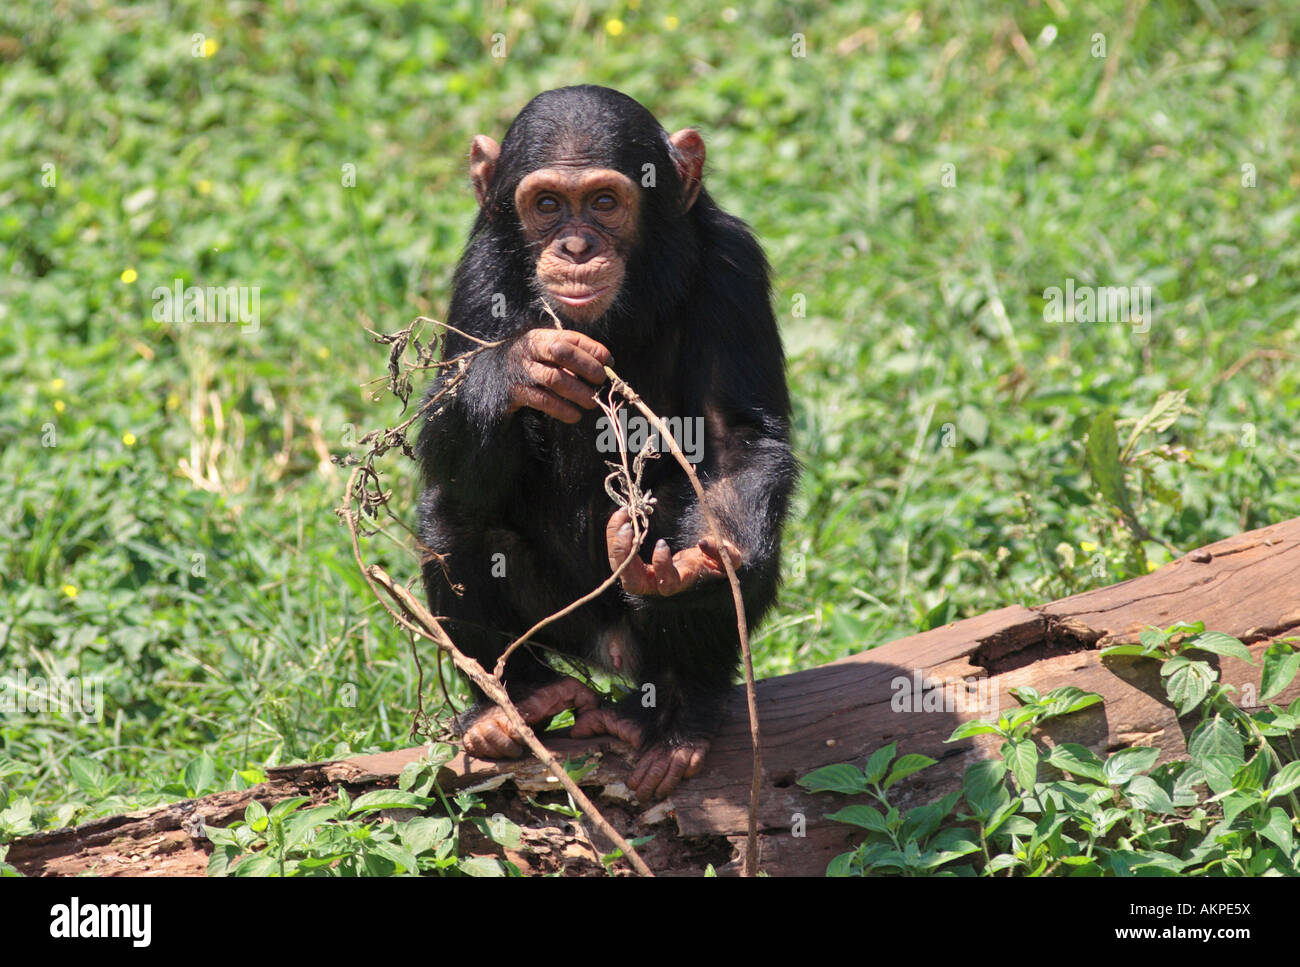 young chimp, Pan troglodytes Stock Photo